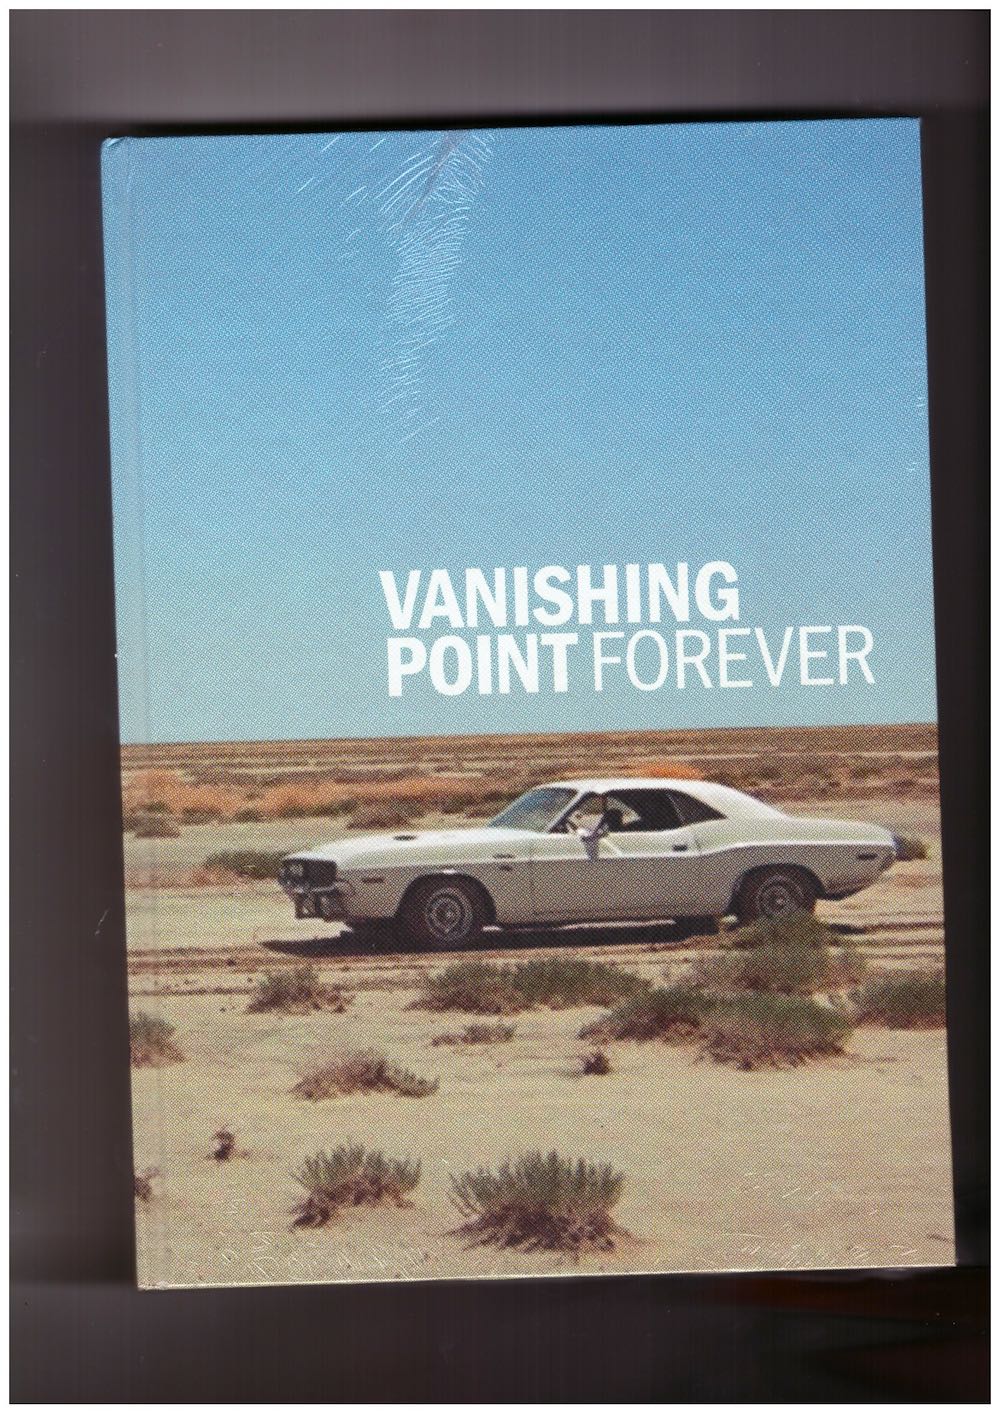 RUBIN, Robert M. - Vanishing Point Forever